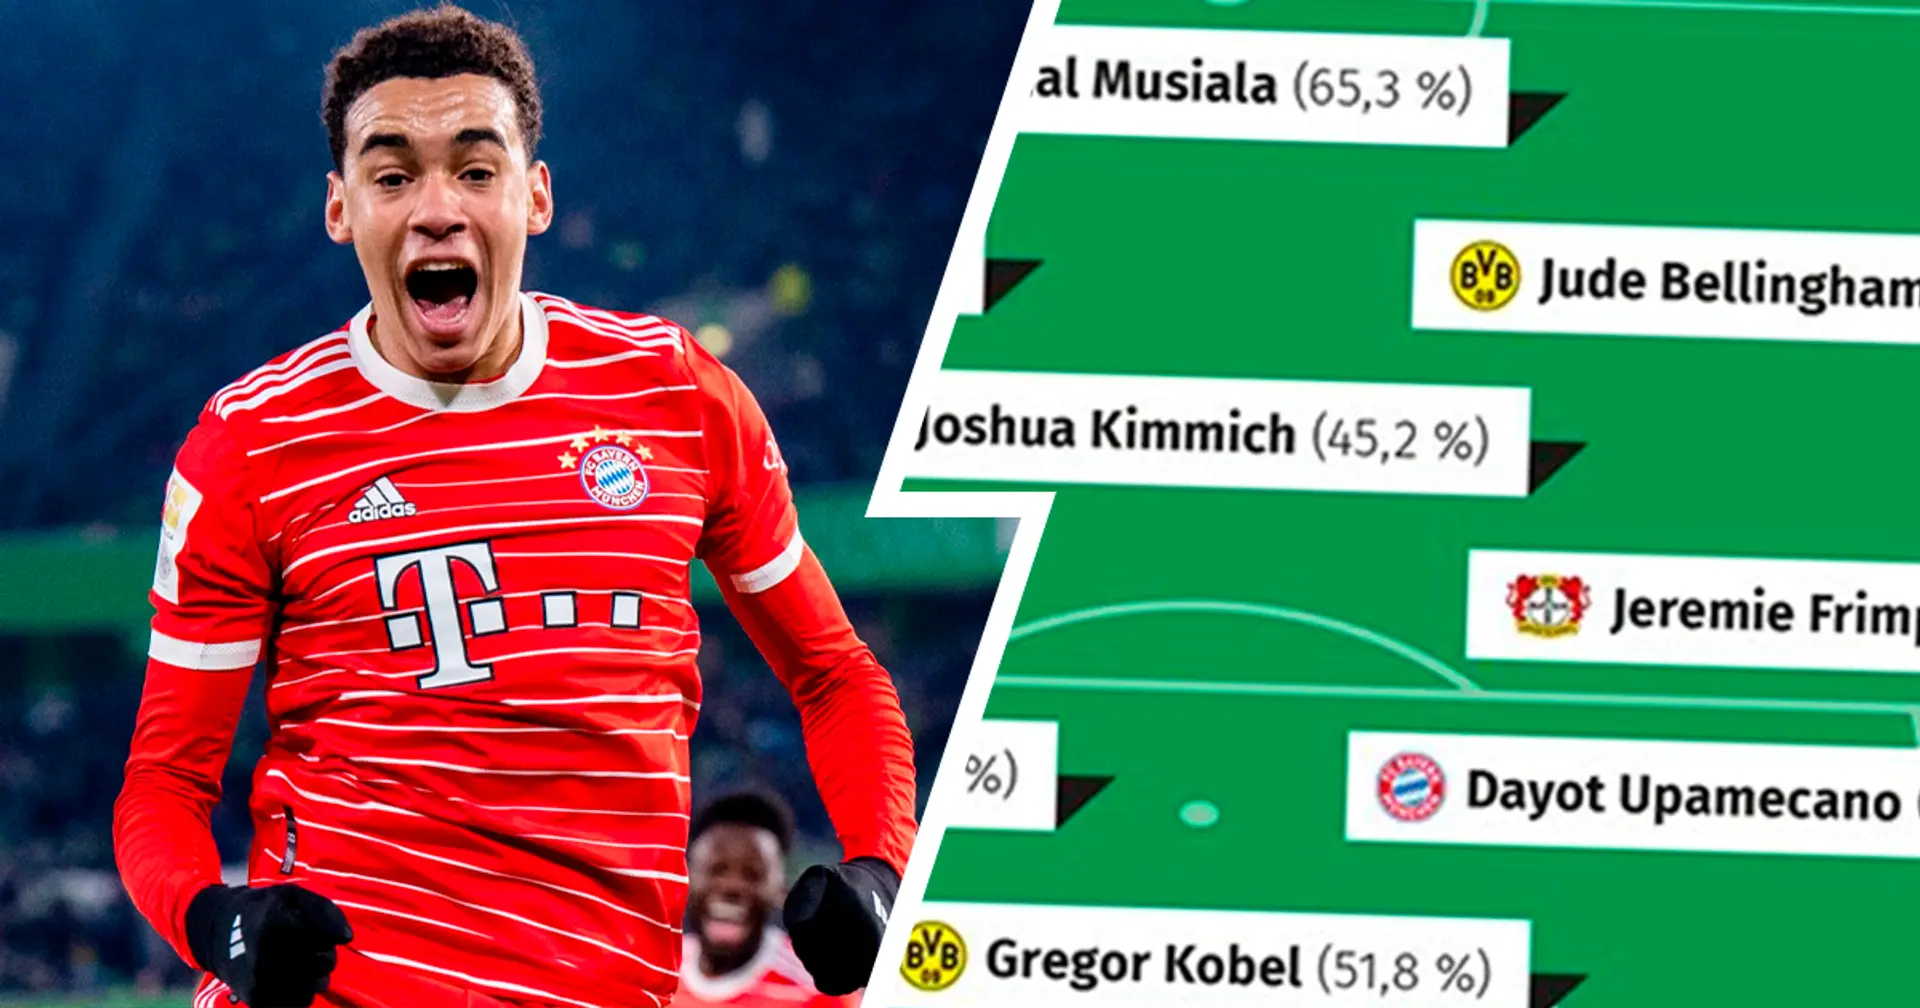 Gleich 5 Bayern-Spieler in Top-Elf mit dabei, Musiala einer der Besten - Ergebnisse der VDV-Abstimmung bekannt